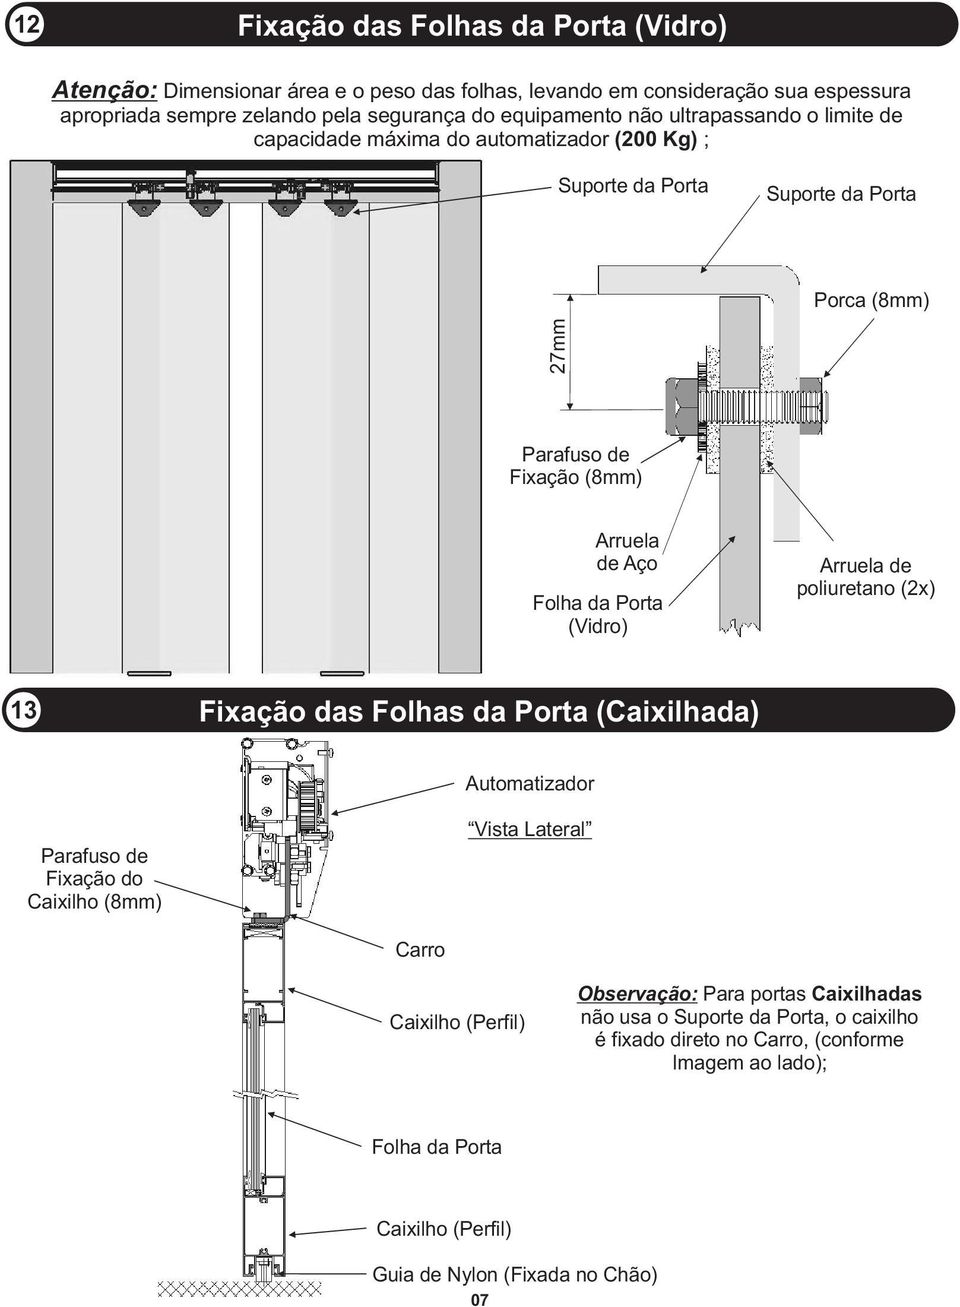 Porta (Vidro) Arruela de poliuretano (2x) 13 Fixação das Folhas da Porta (Caixilhada) Automatizador Parafuso de Fixação do Caixilho (8mm) Vista Lateral Carro Caixilho (Perfil)